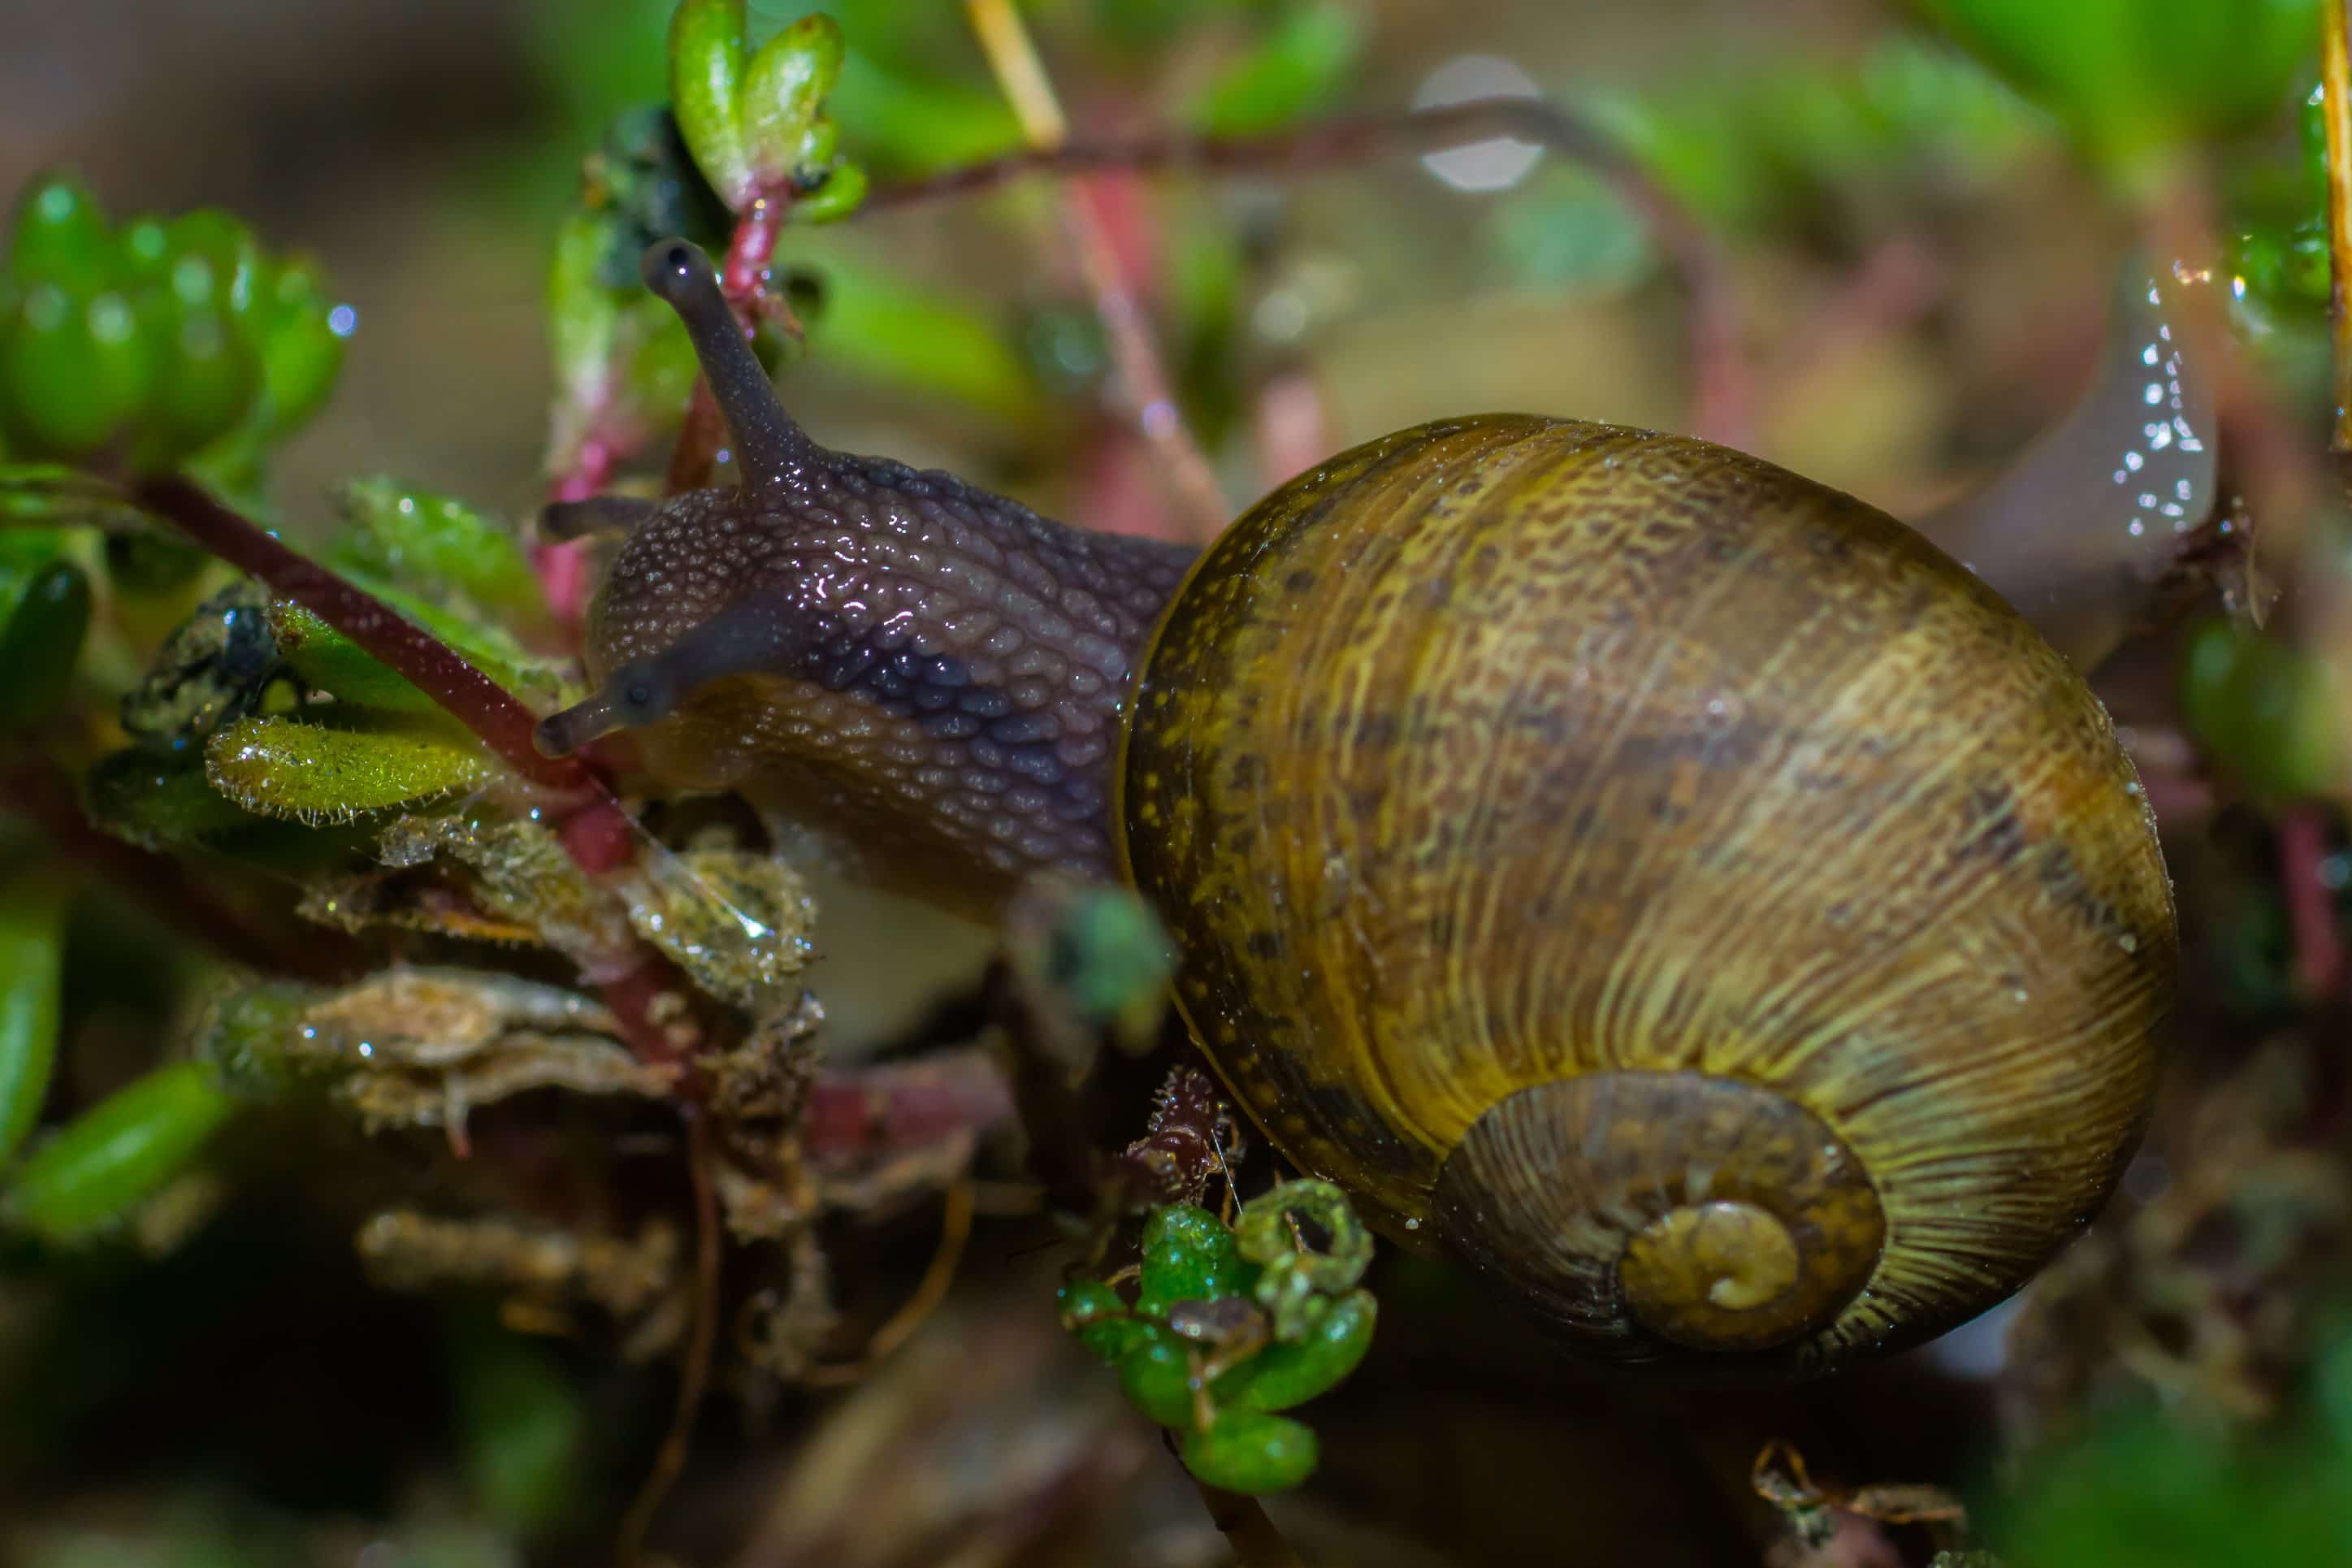 Free picture: gastropod, invertebrate, detail, nature, slug